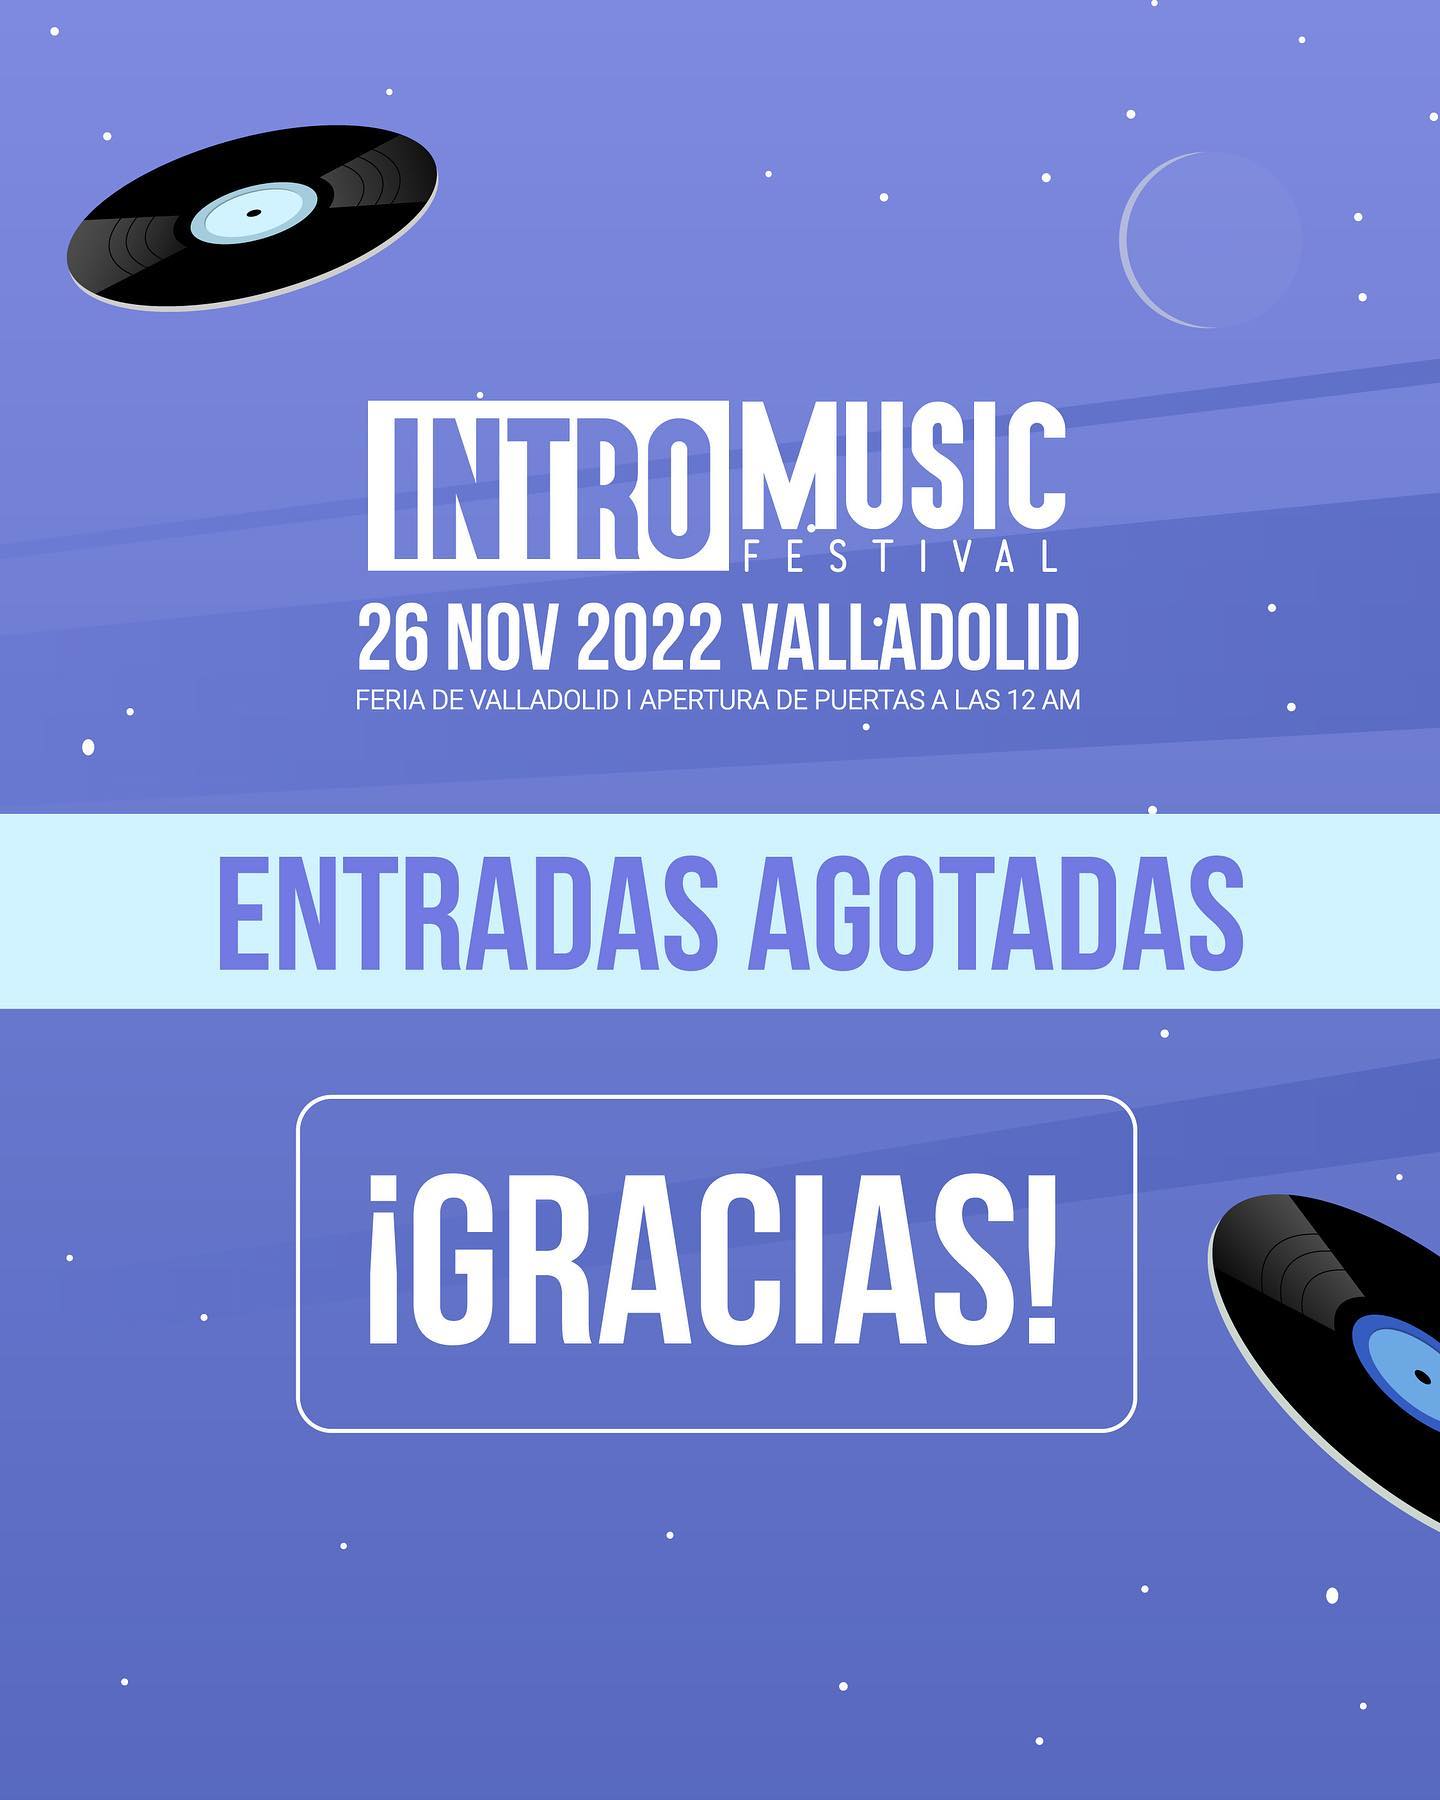 ENTRADAS AGOTADAS PARA INTRO MUSIC FESTIVAL  26 de noviembre en Feria de Valladolid. #valladolindie